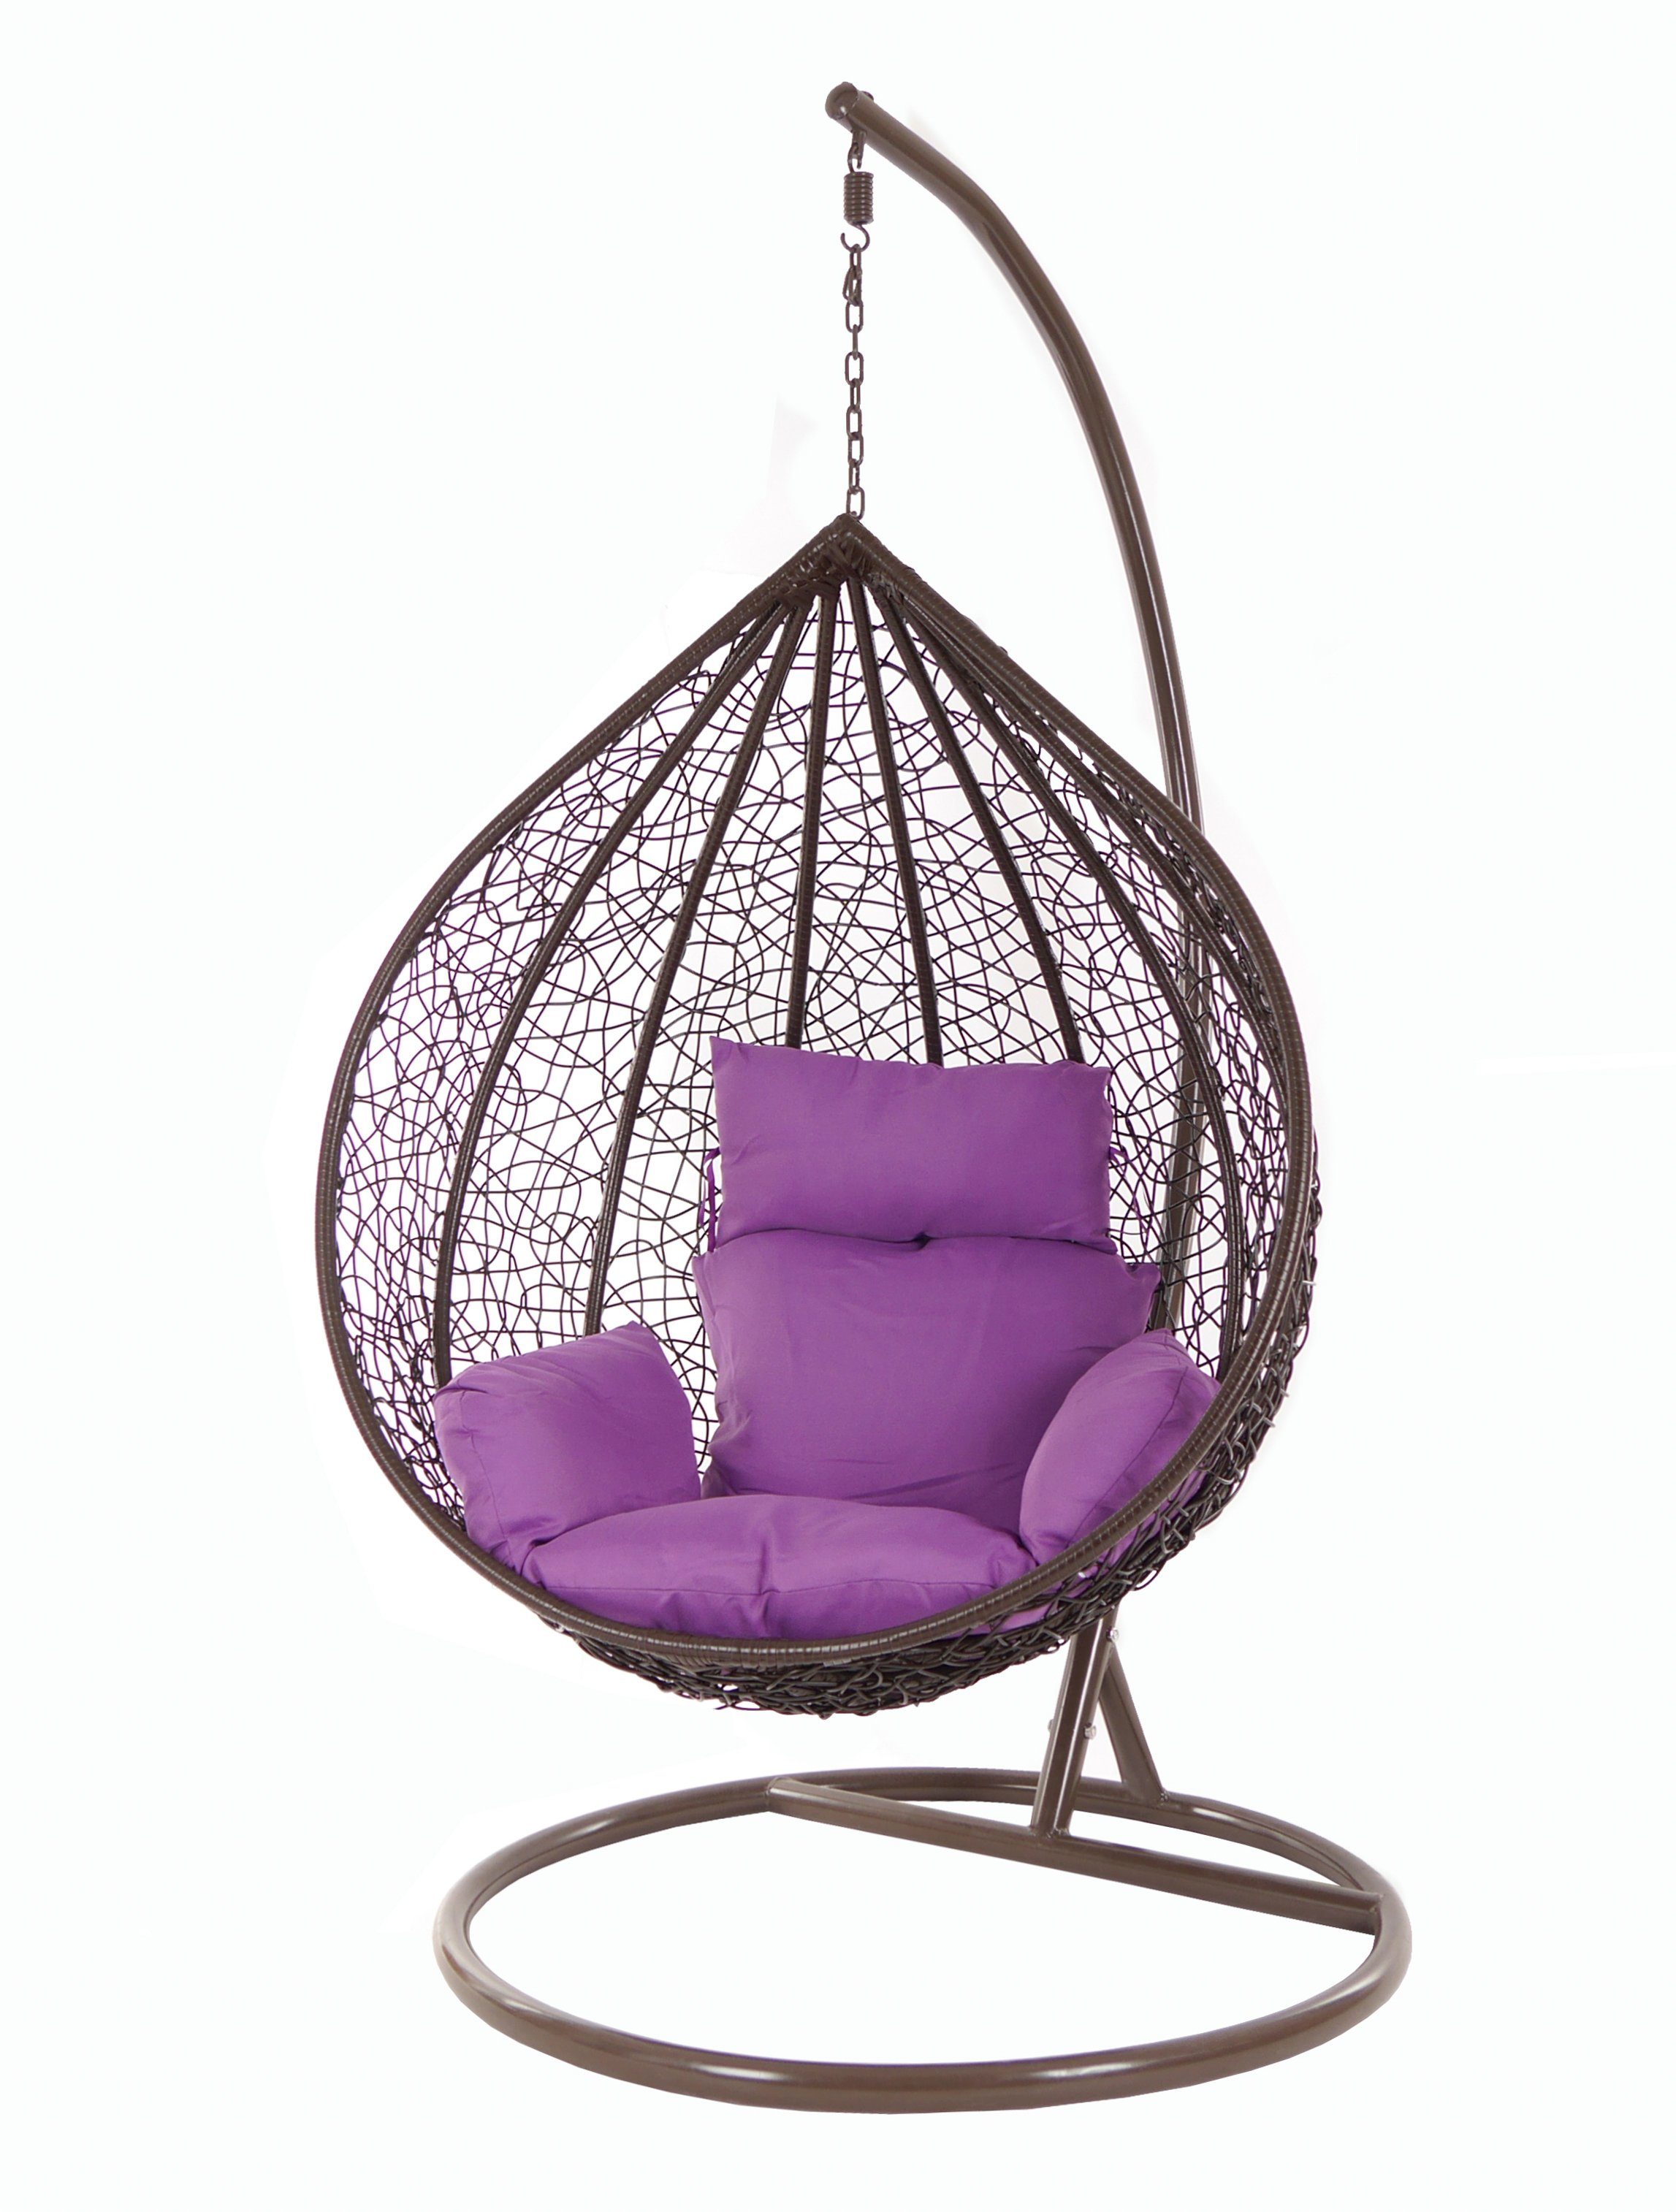 KIDEO Hängesessel Hängesessel MANACOR darkbrown, Swing Chair, braun, Schwebesessel, Hängesessel mit Gestell und Kissen lila (4050 violet)